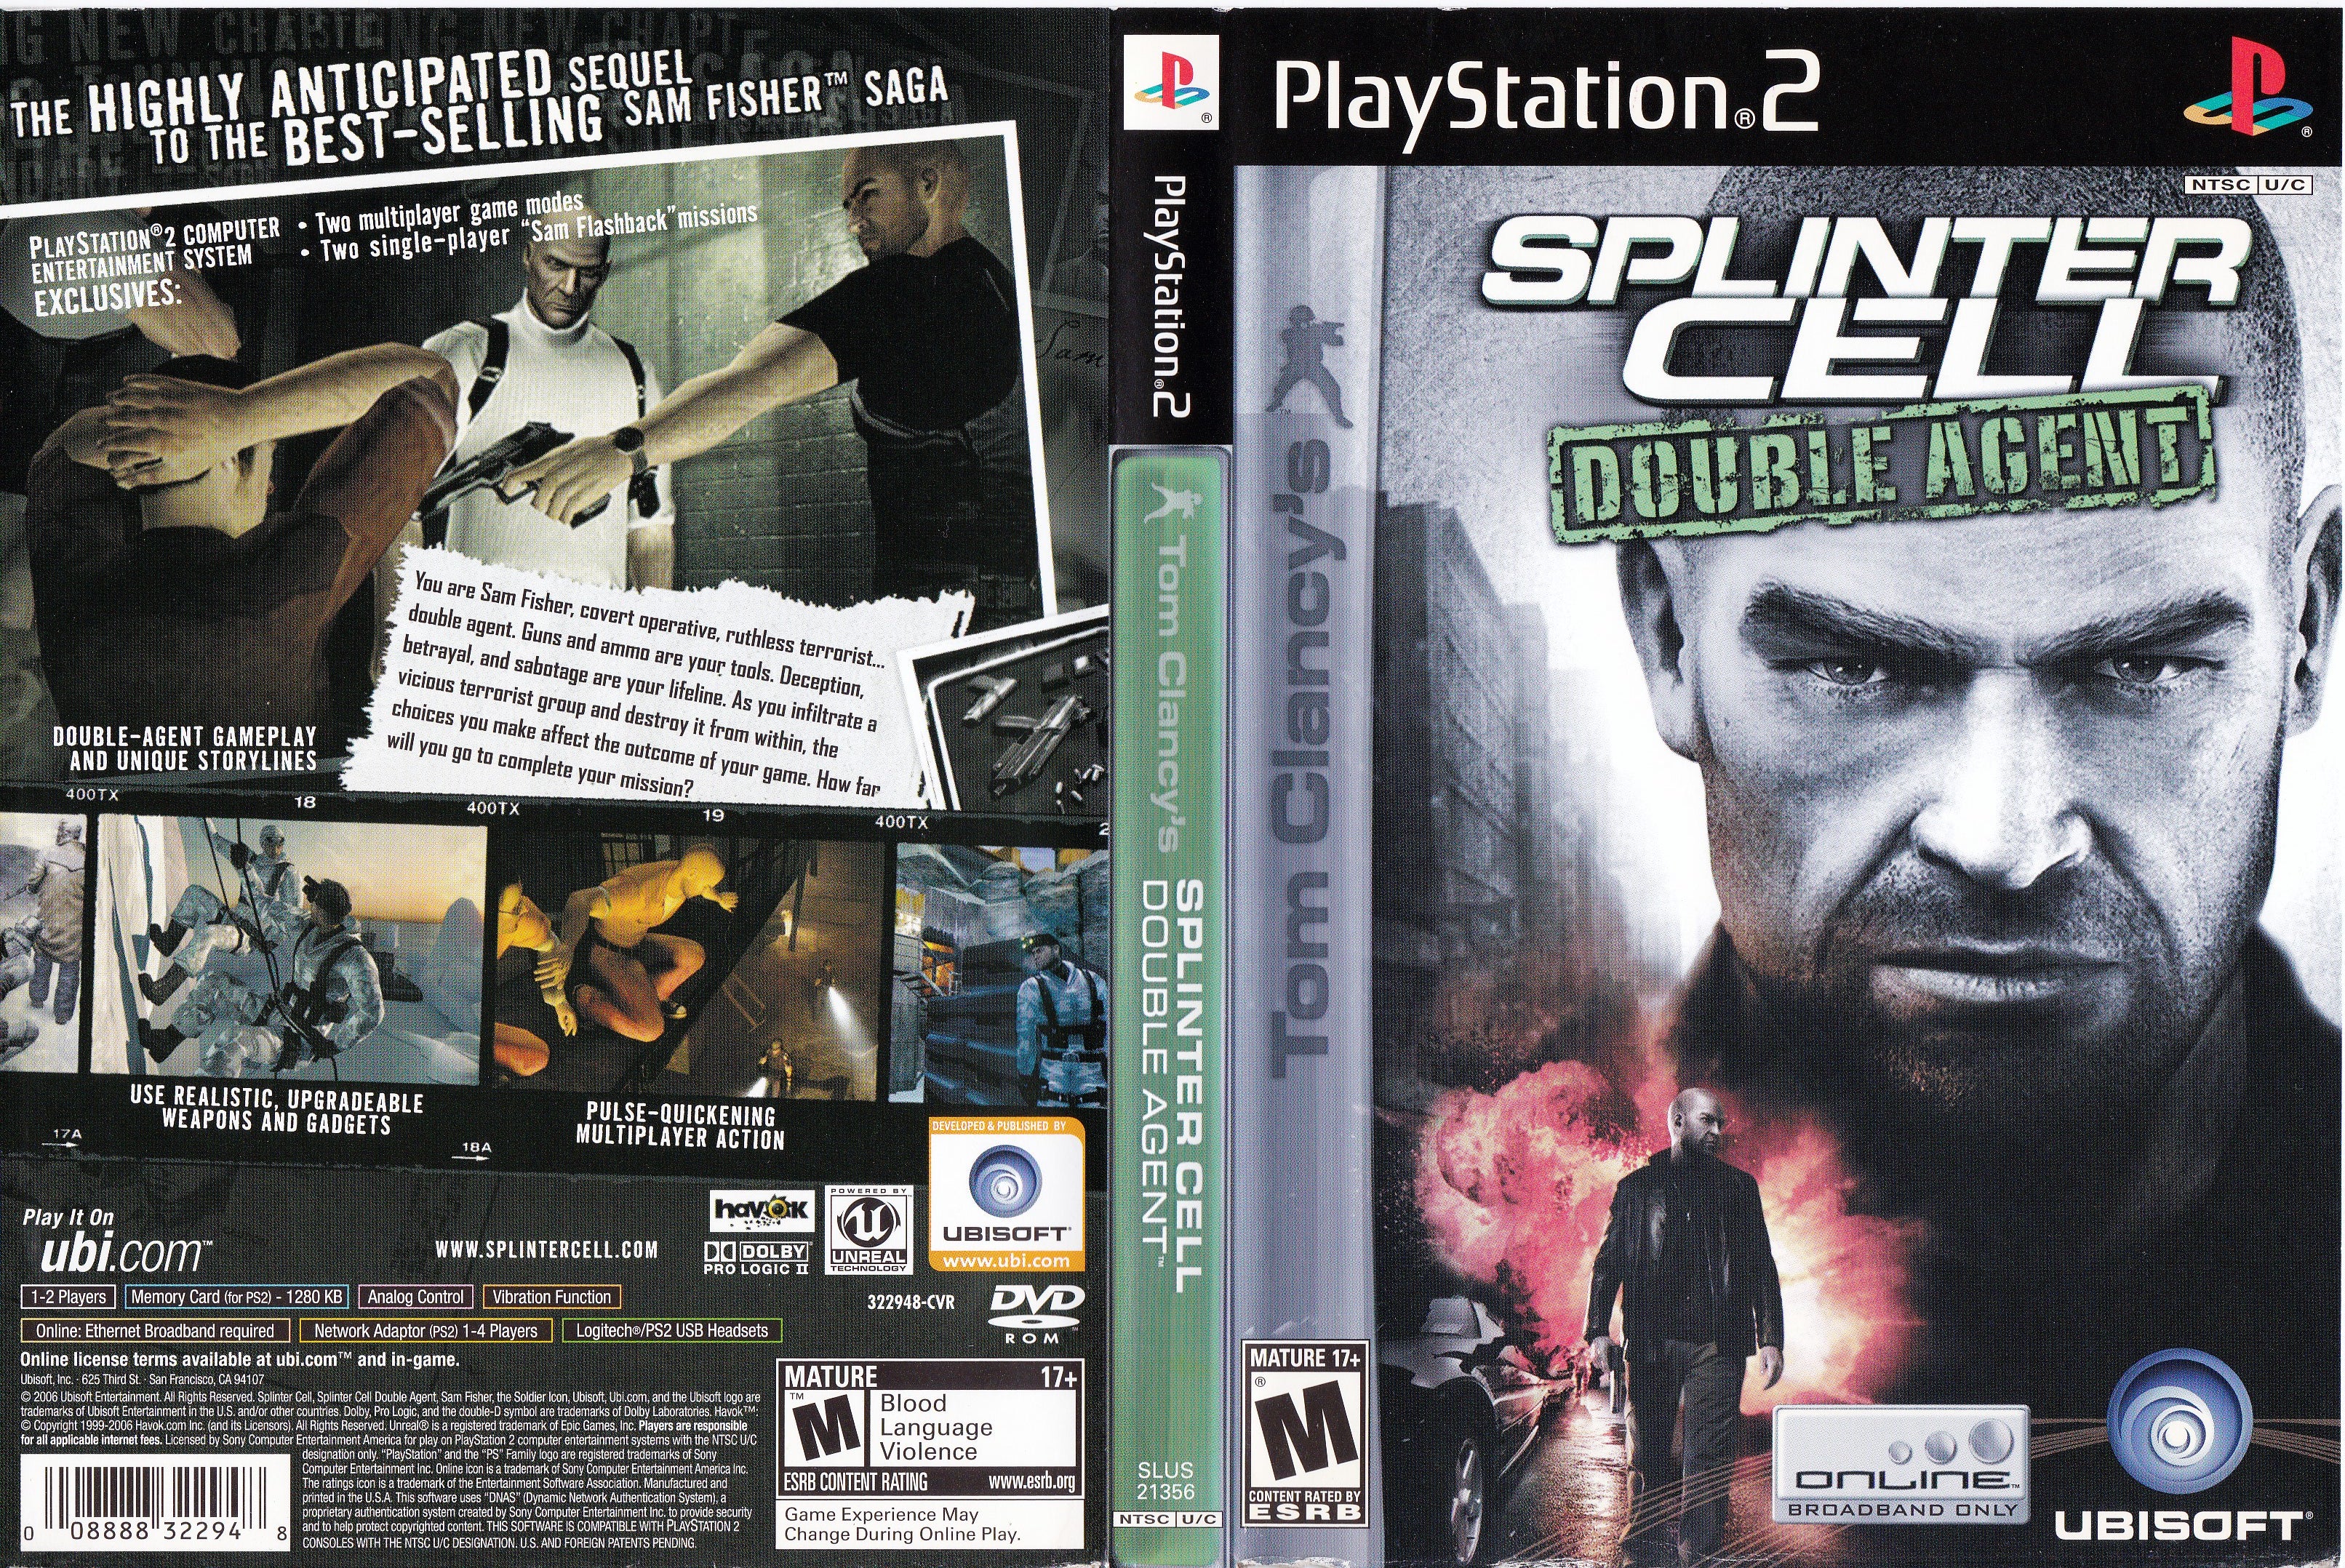 Tom Clancy's Splinter Cell (PlayStation 2) 